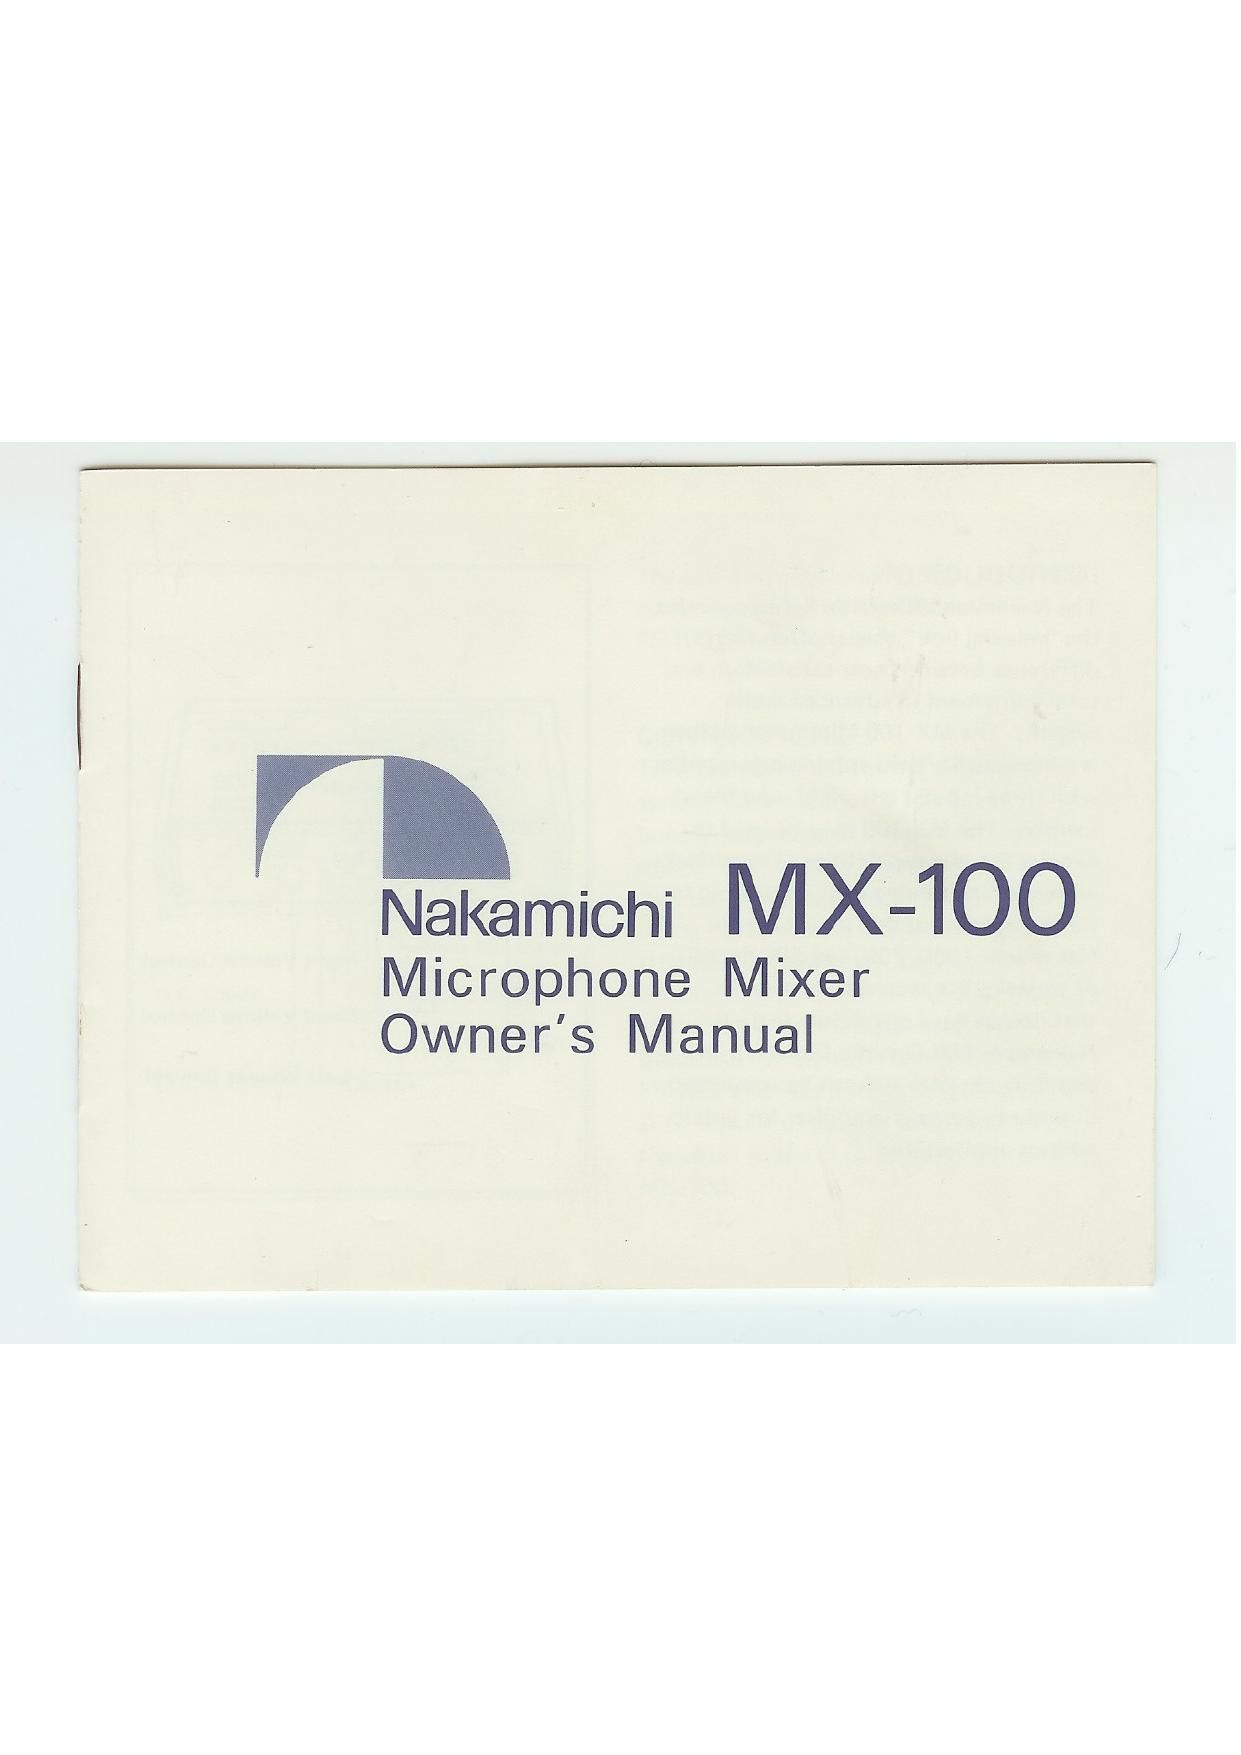 free nakamichi manuals